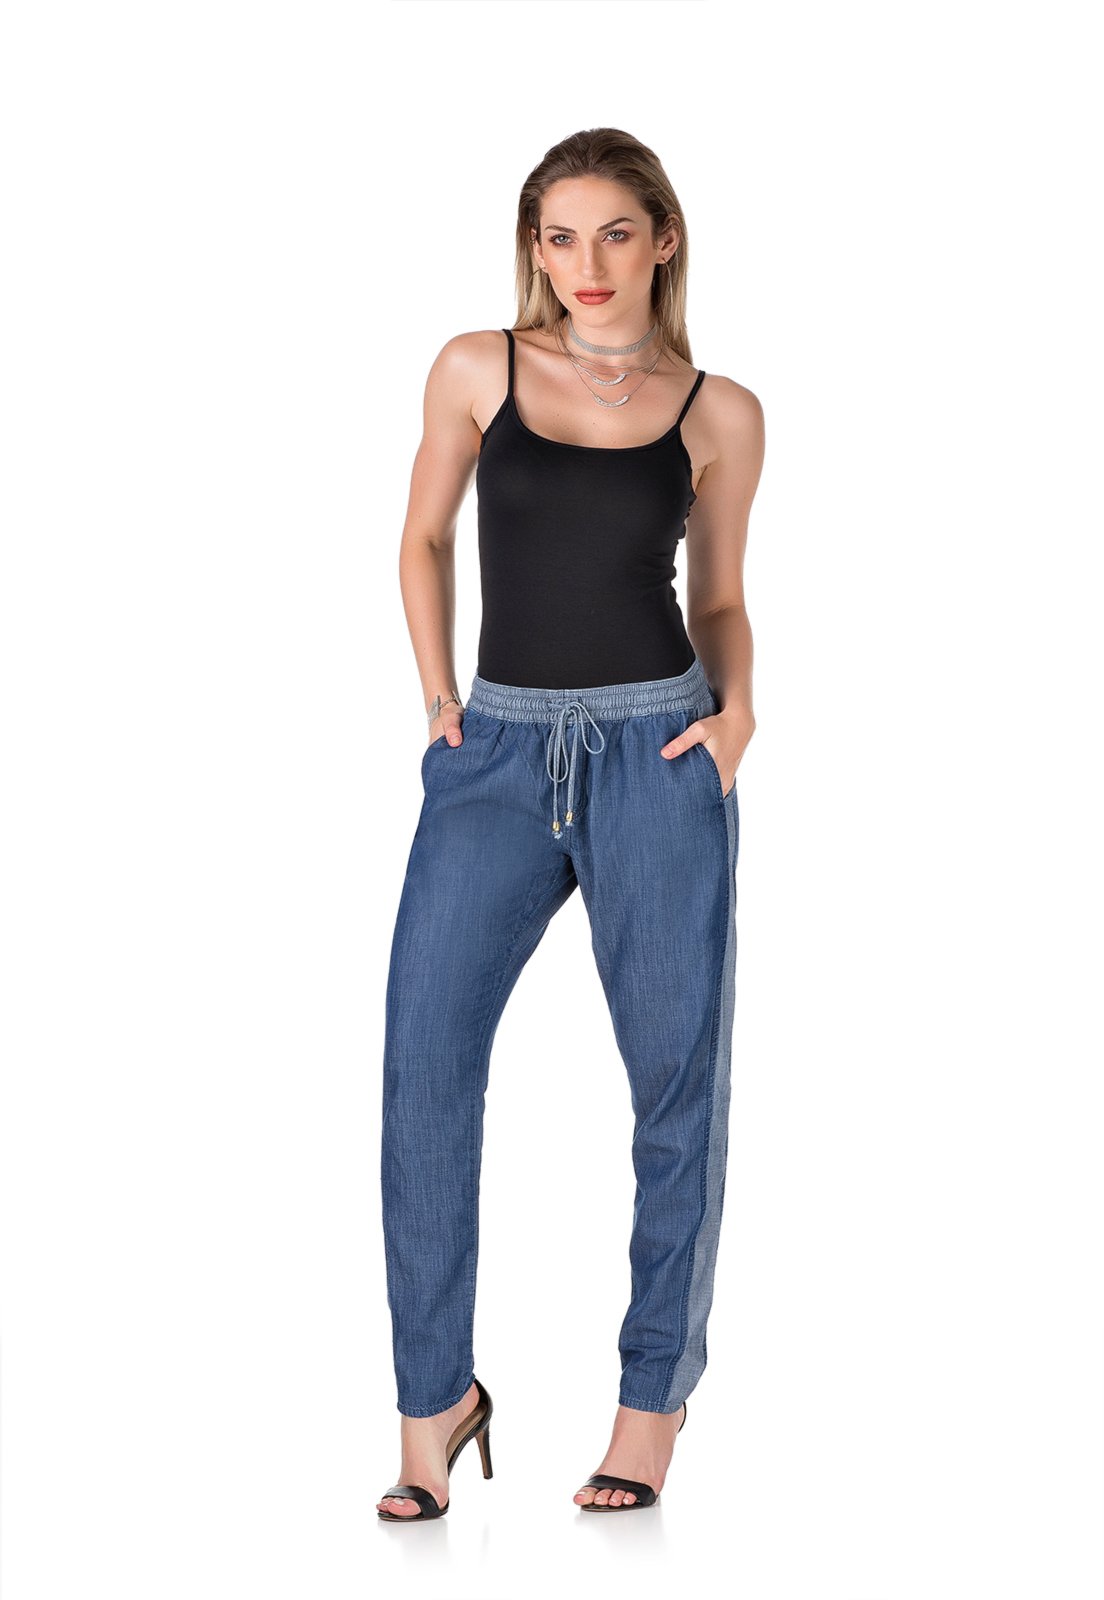 calca jeans c elastico na cintura